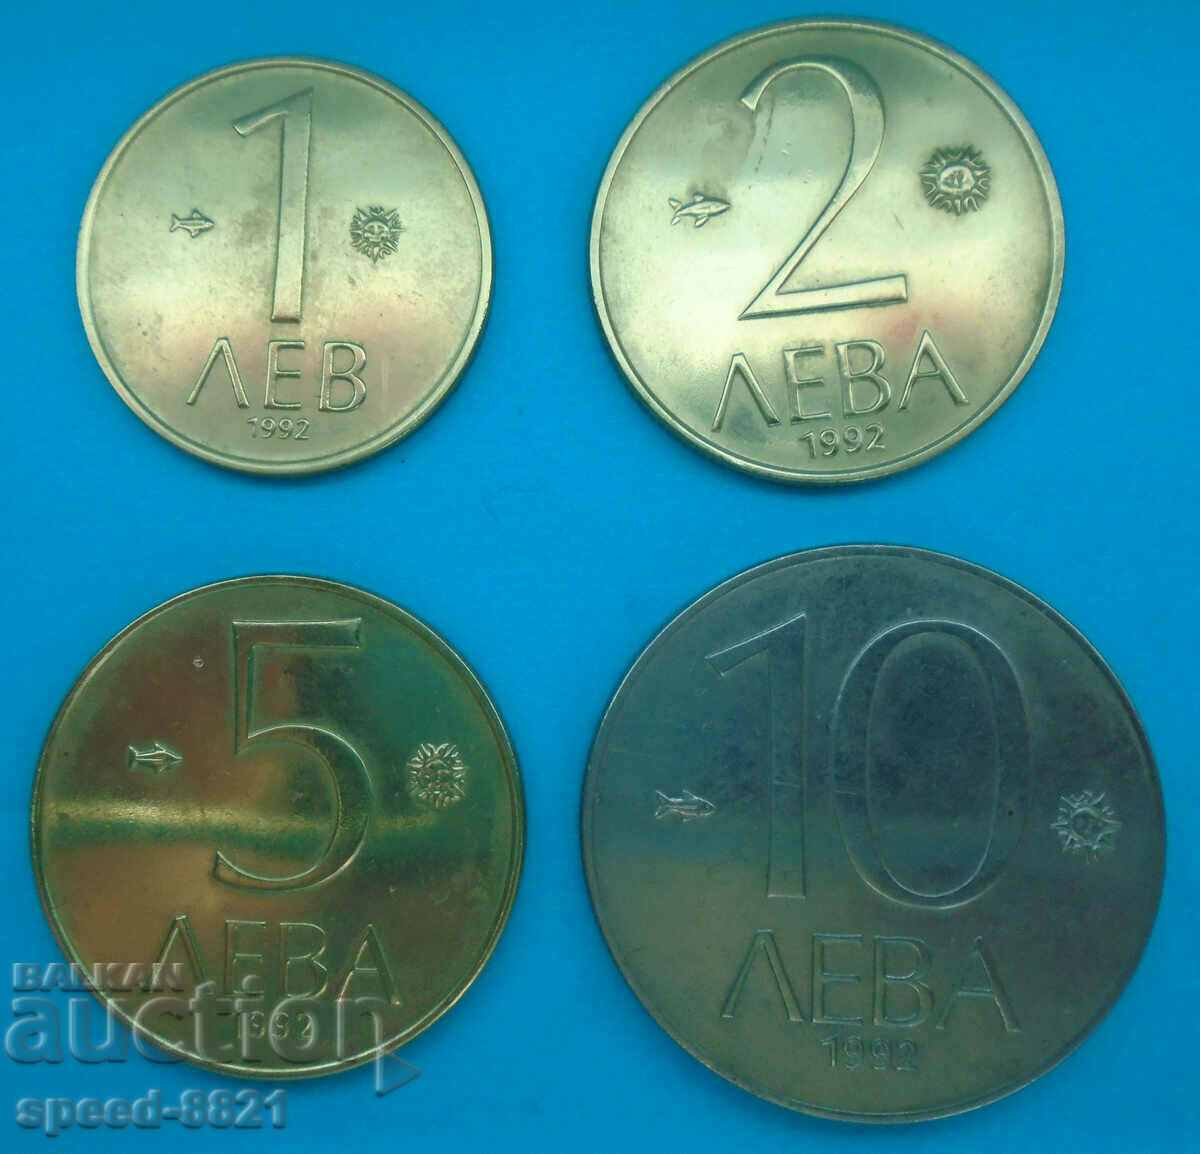 Lot 4 coins 1992 Bulgaria